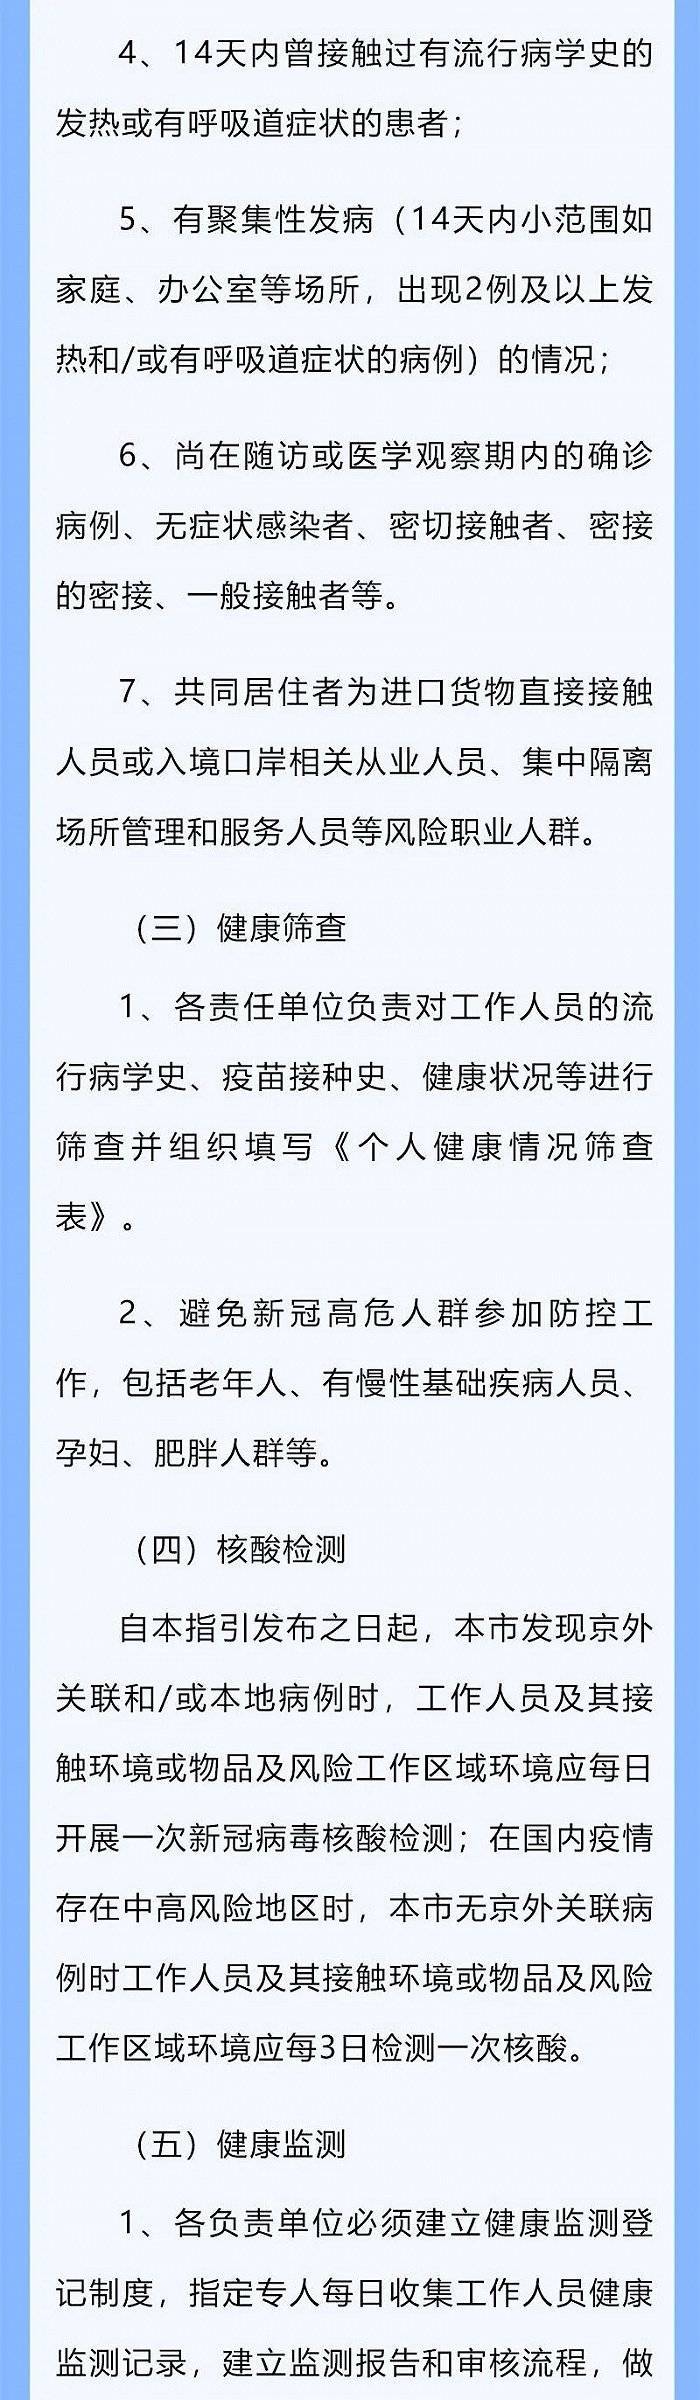 北京市疾控中心发布疫情防控高风险工作人员管理指引